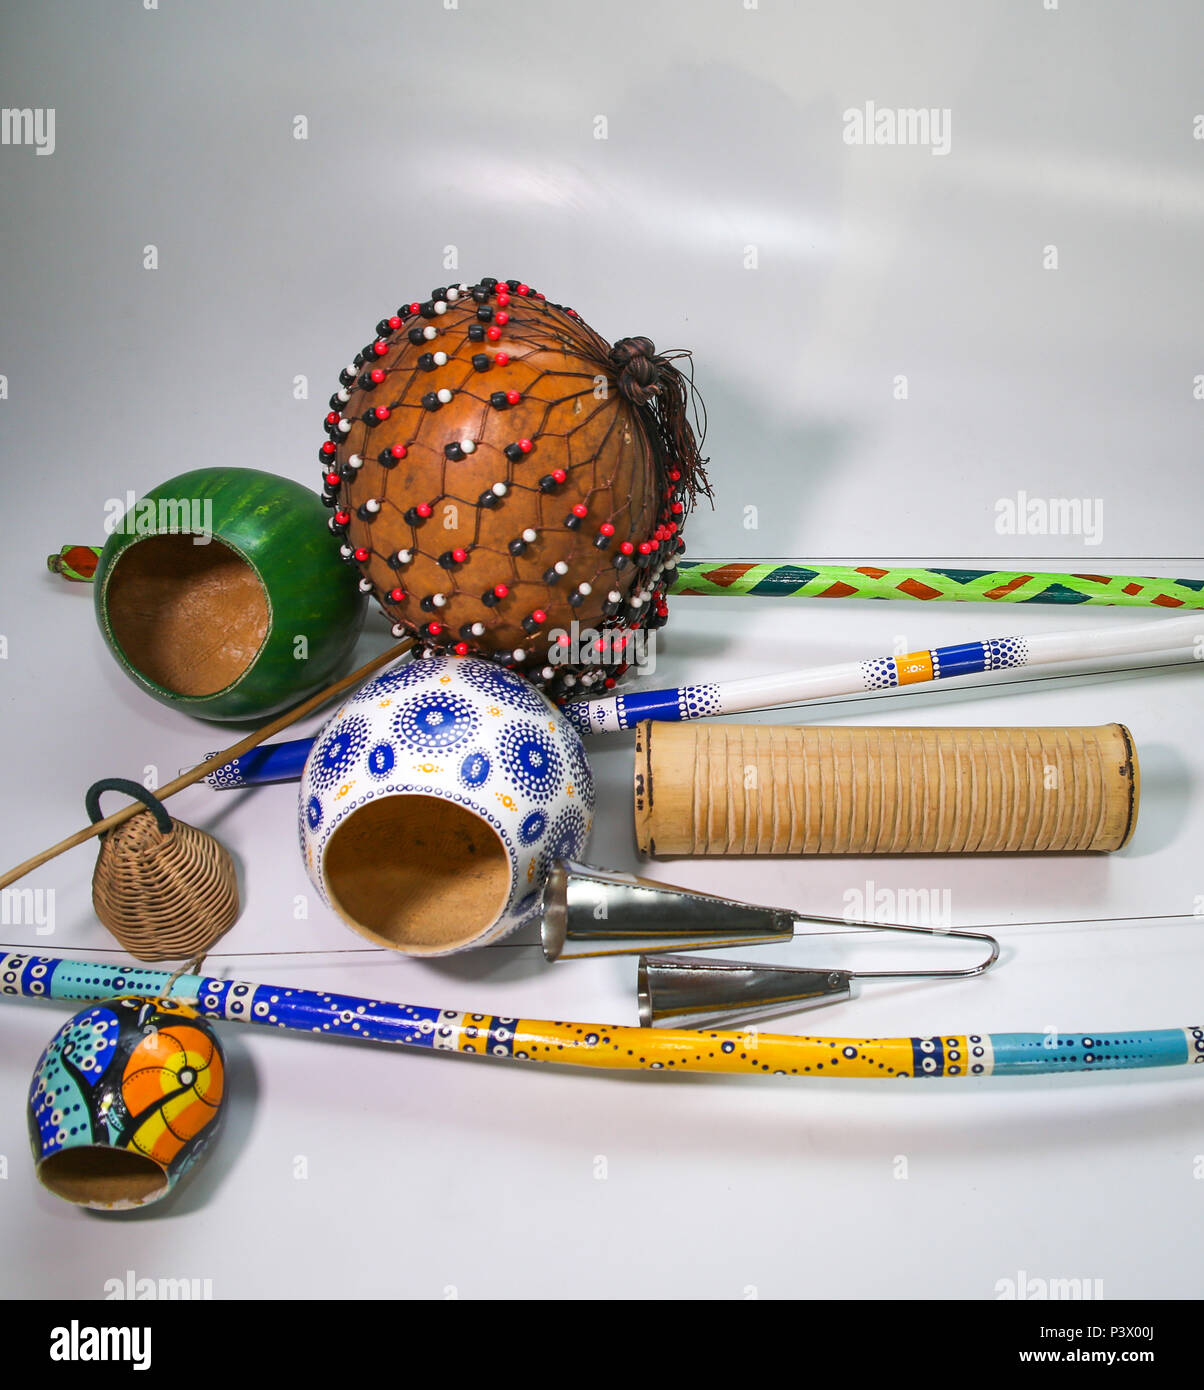 Na foto, berimbau, xequerê, reco-reco, caxixi e agogô. Instrumentos musicais utilizados no acompanhamento da capoeira. Stock Photo